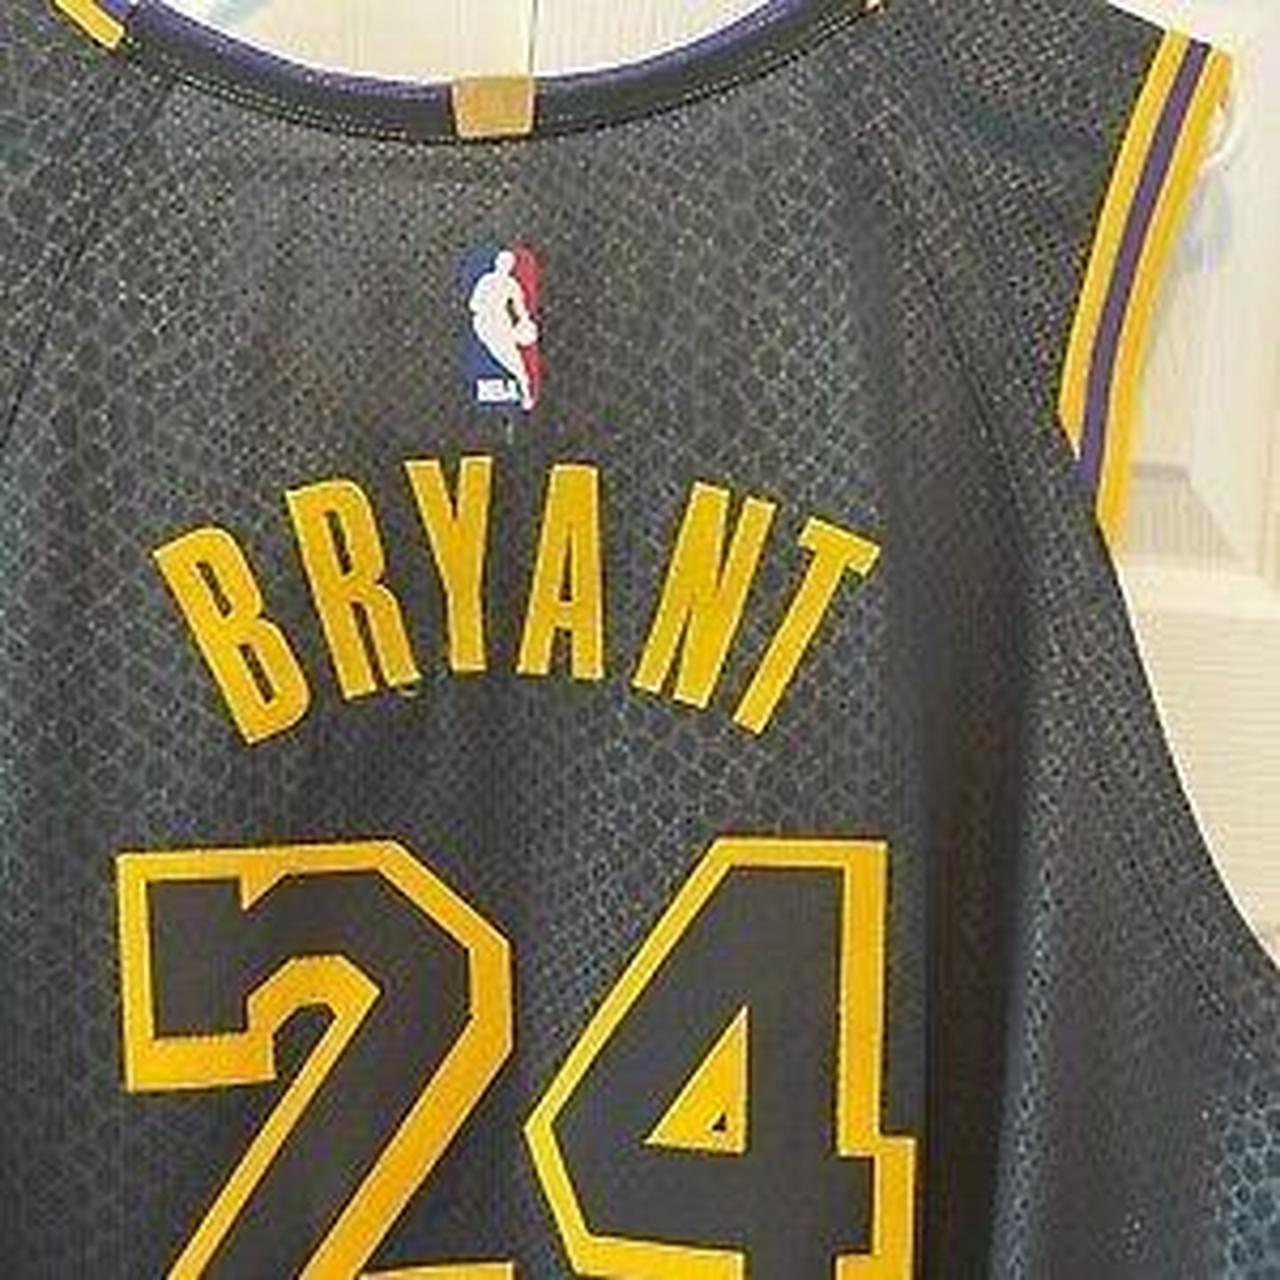 Los Angeles Lakers “Kobe Bryant” #24 Adidas Jersey - Depop